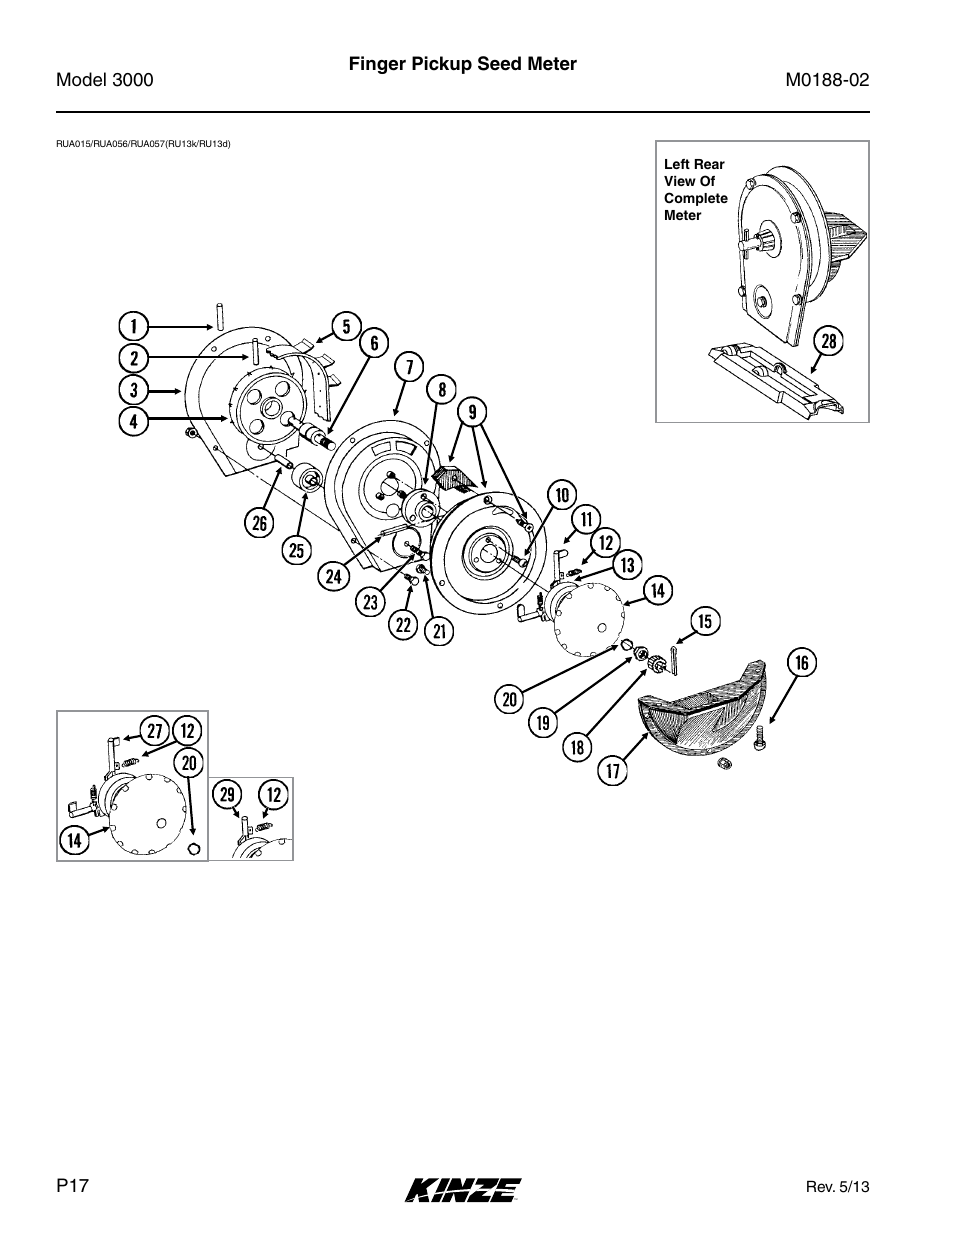 Finger pickup seed meter | Kinze 3000 Rigid Frame Planter Rev. 5/14 User Manual | Page 20 / 154